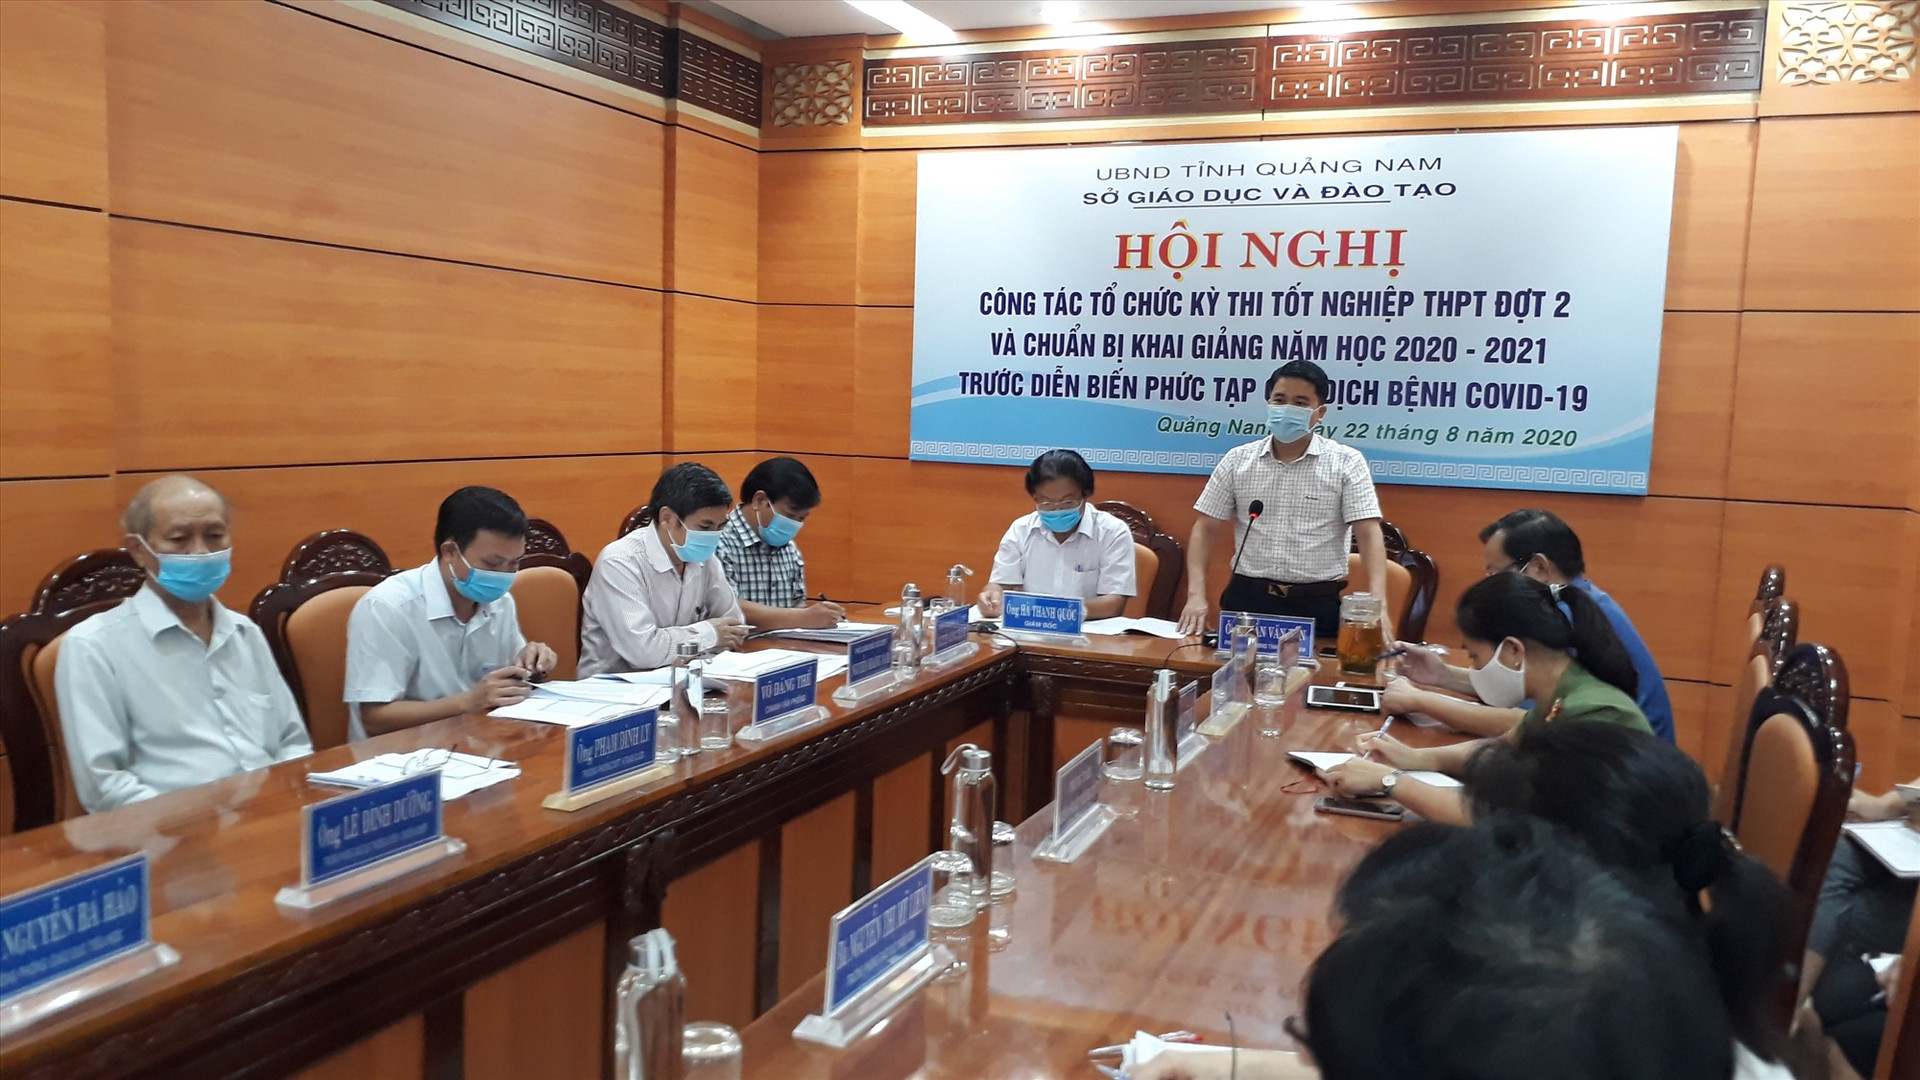 Phó Chủ tịch UBND tỉnh Trần Văn Tân nhấn mạnh việc tổ chức kỳ thi tốt nghiệp THPT đợt 2 t phải được triển khai nghiêm túc, đúng quy chế, đảm bảo an toàn sức khỏe cho TS và giám thị. Ảnh: X.P